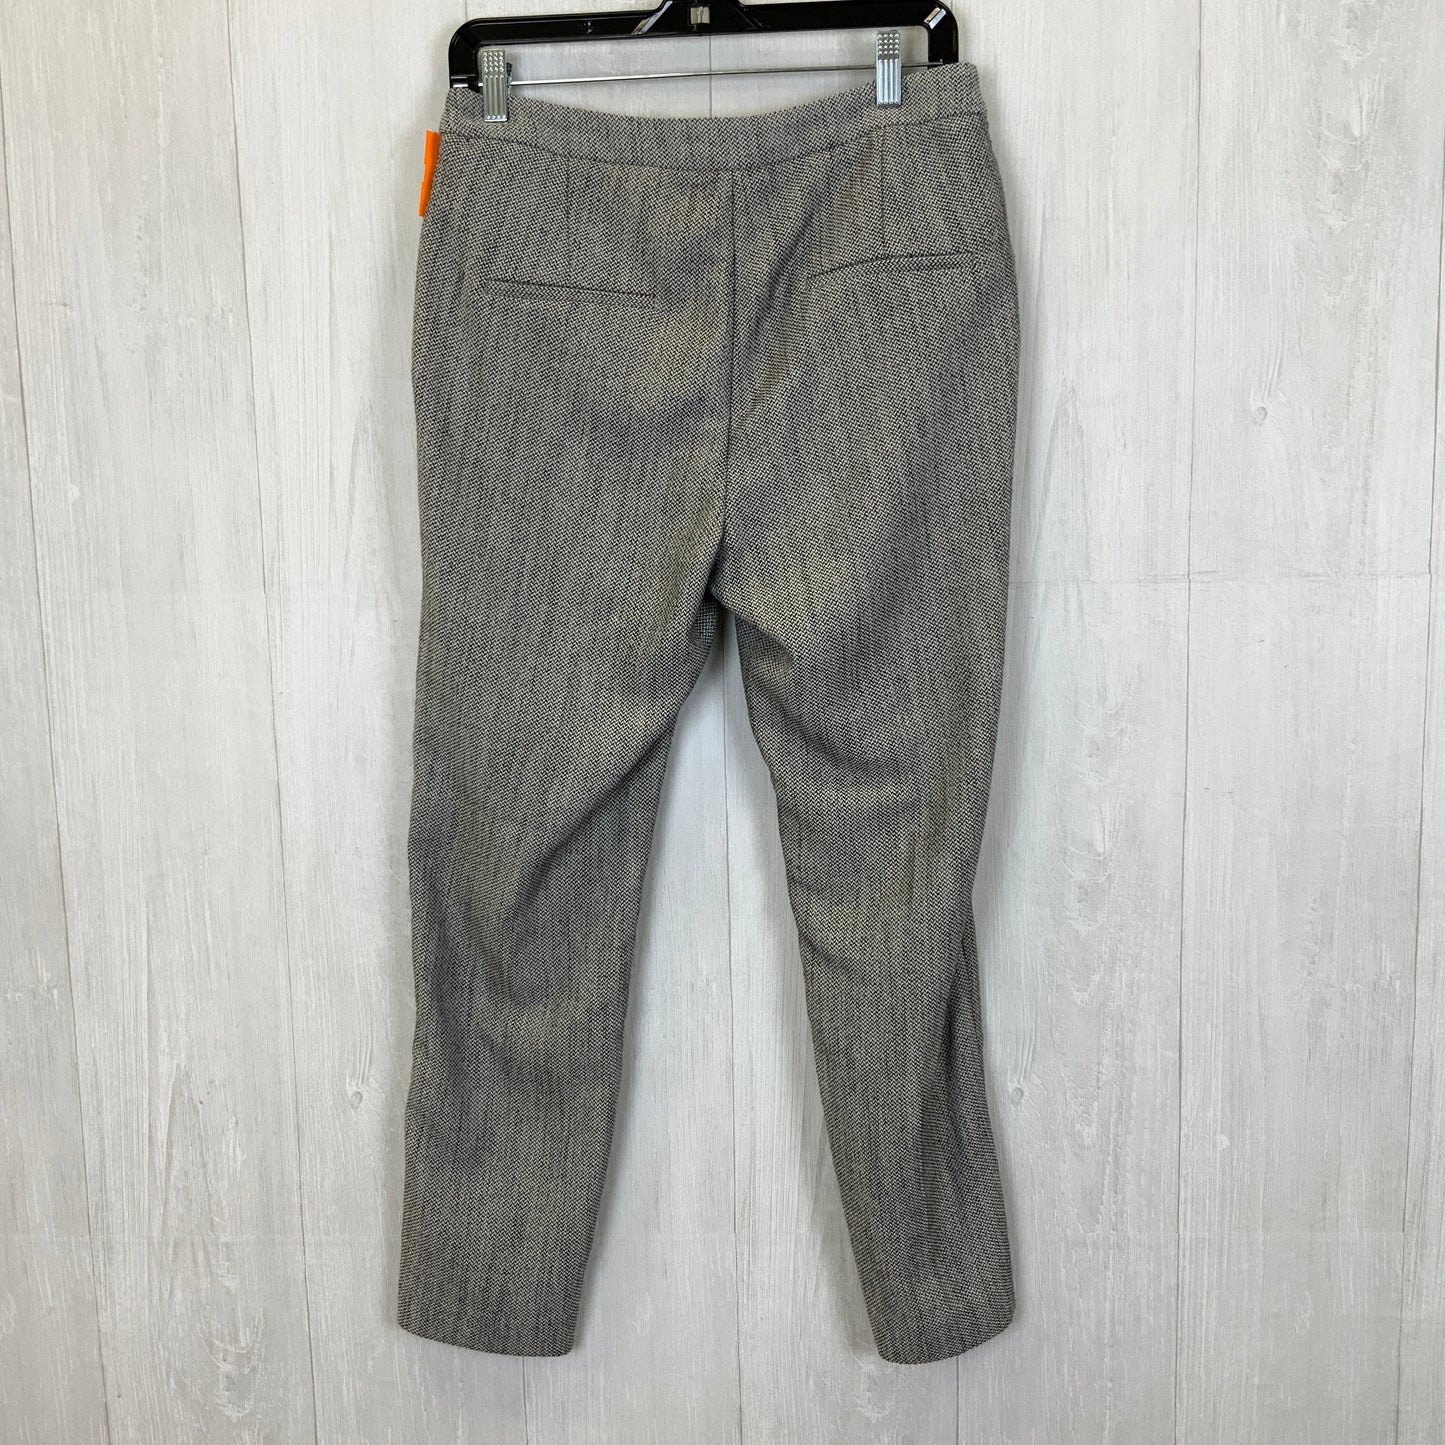 Pants Work/dress By H&m  Size: 8